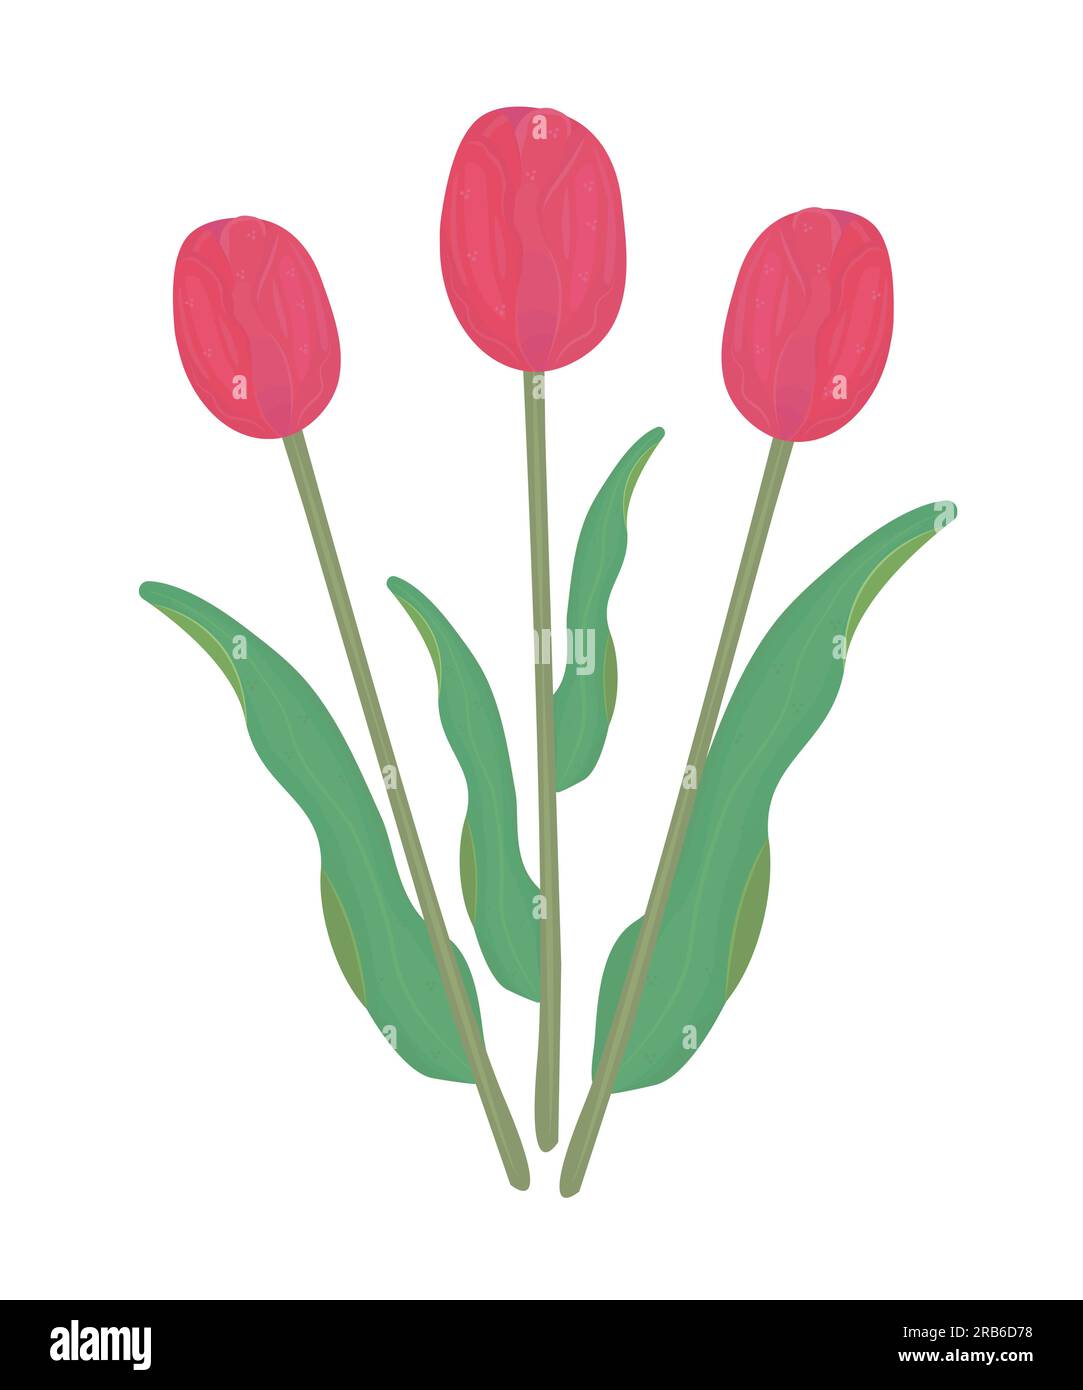 Drei rote Tulpen mit Blättern, farbenfrohe Illustration Stock Vektor